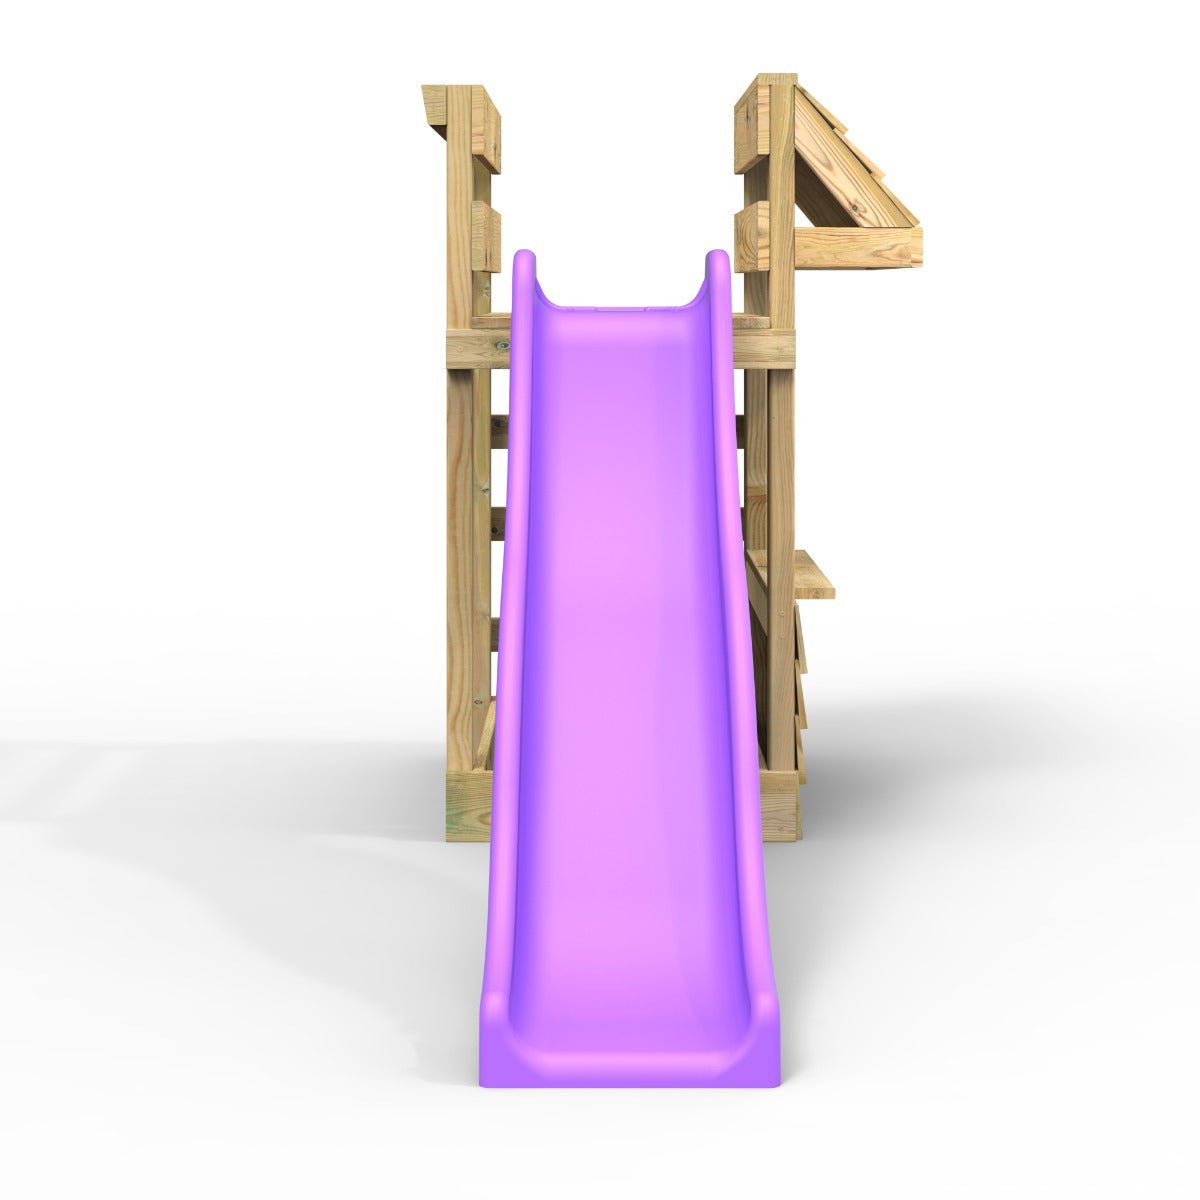 Shop Pack Add-on Wooden Platform with 6FT Slide for Rebo Swing Sets – Purple